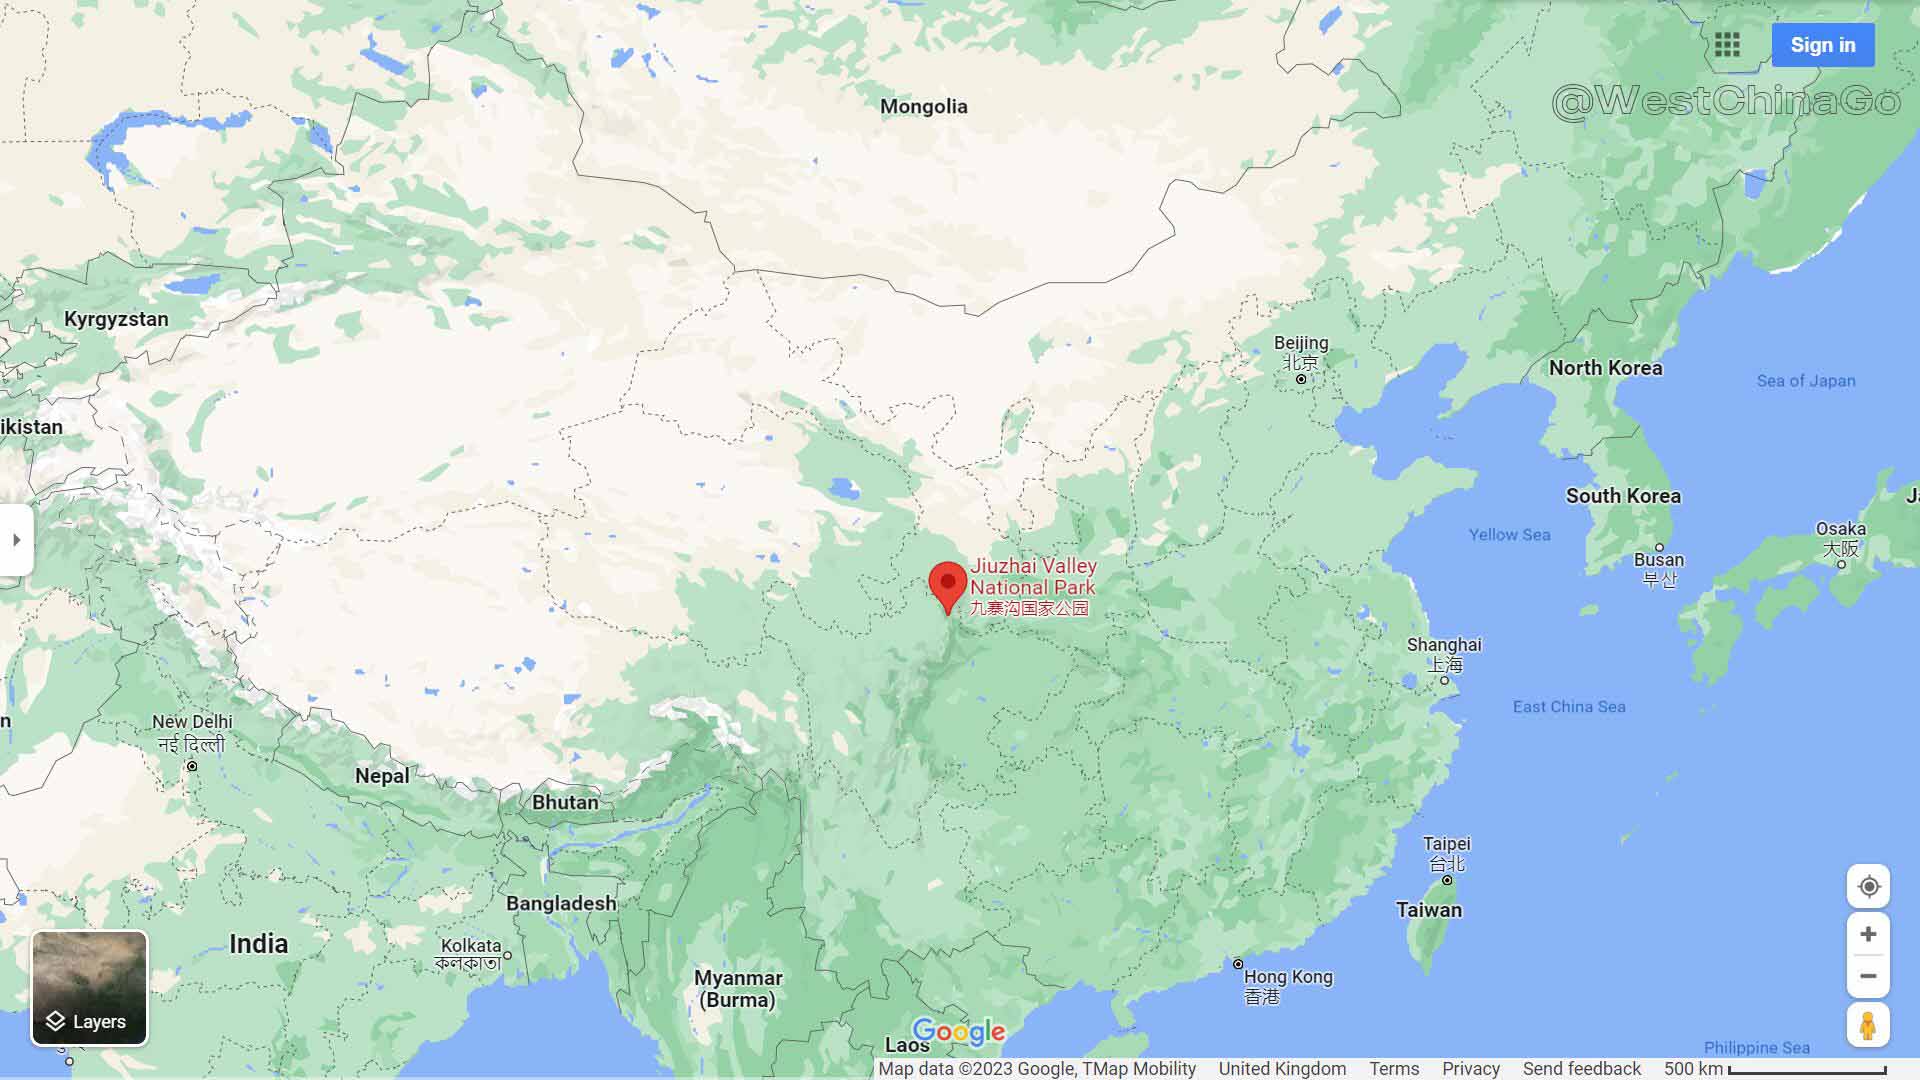 jiuzhaigou Tourist Map